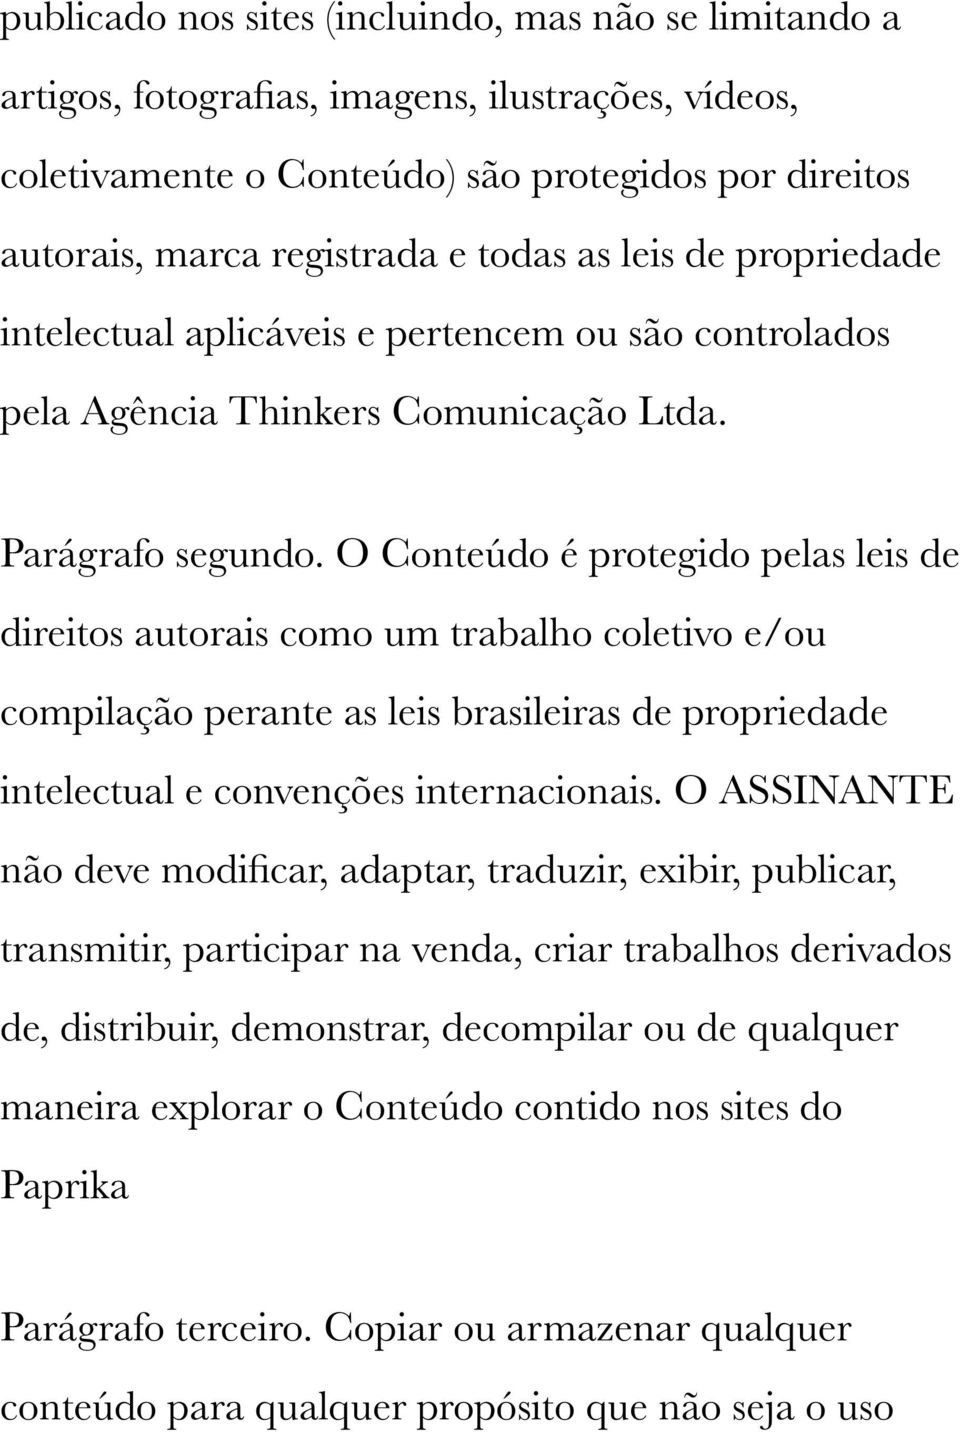 O Conteúdo é protegido pelas leis de direitos autorais como um trabalho coletivo e/ou compilação perante as leis brasileiras de propriedade intelectual e convenções internacionais.